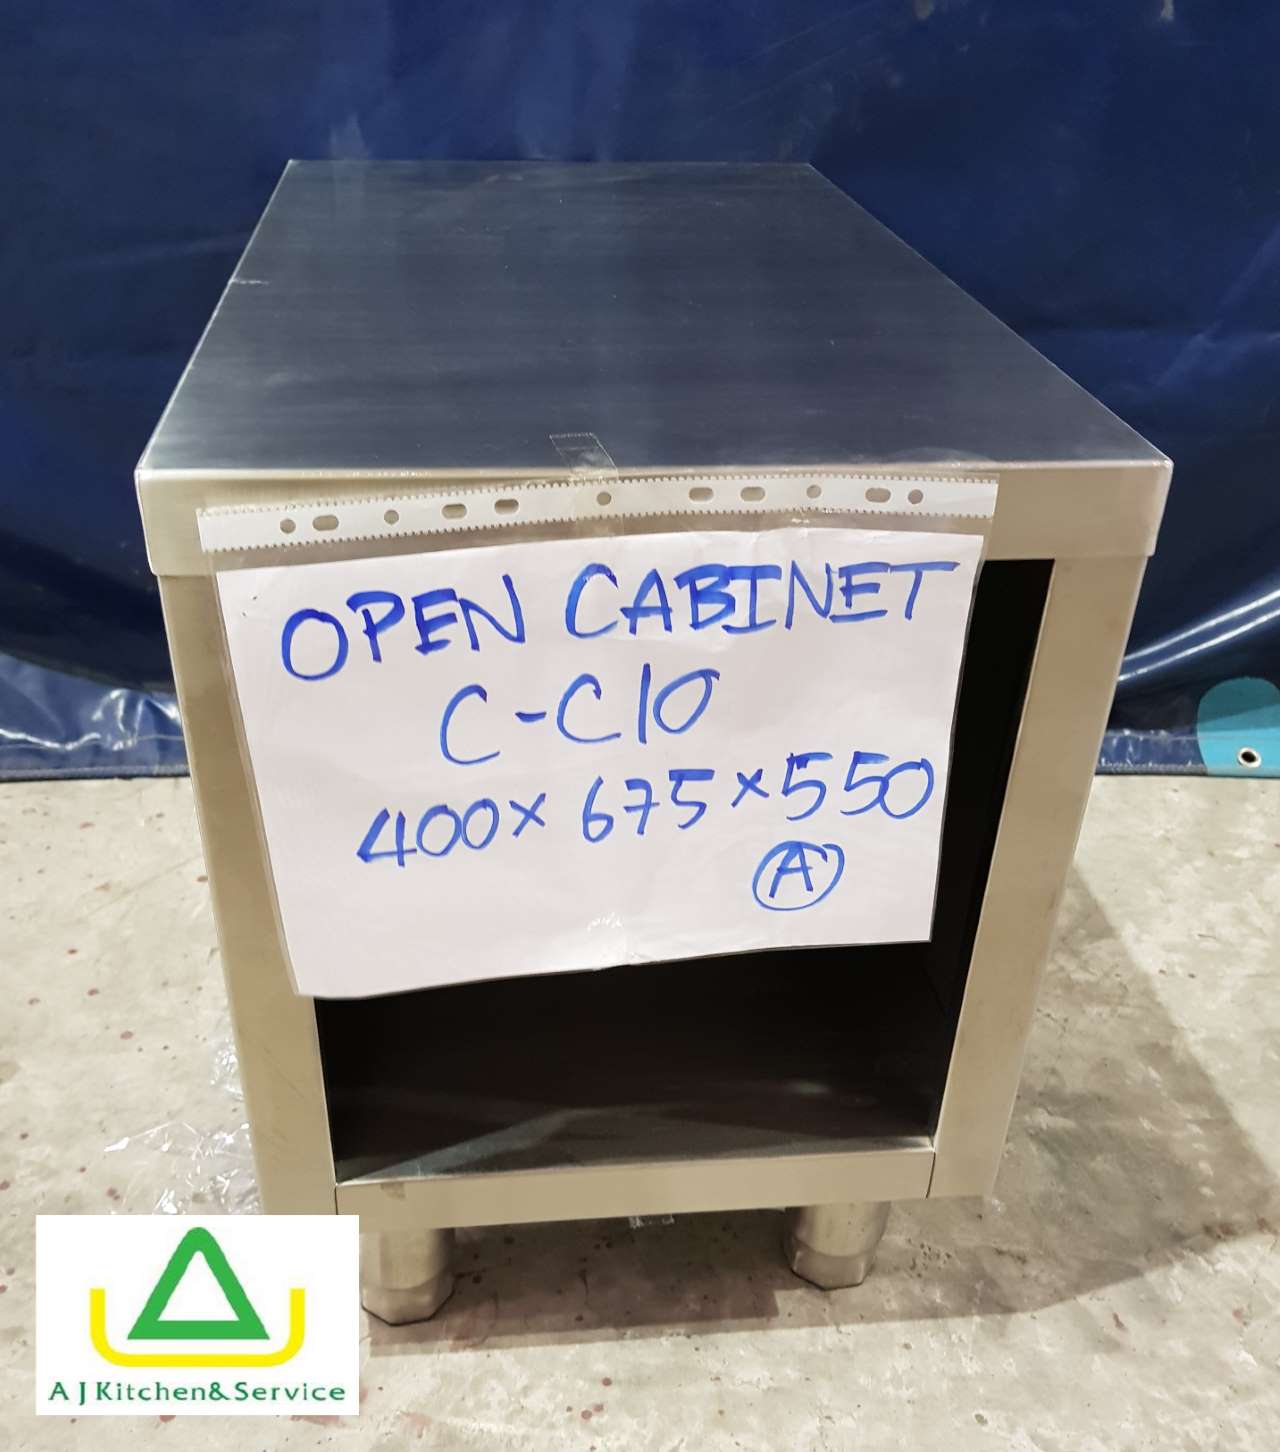 C-C10 Open cabinet 